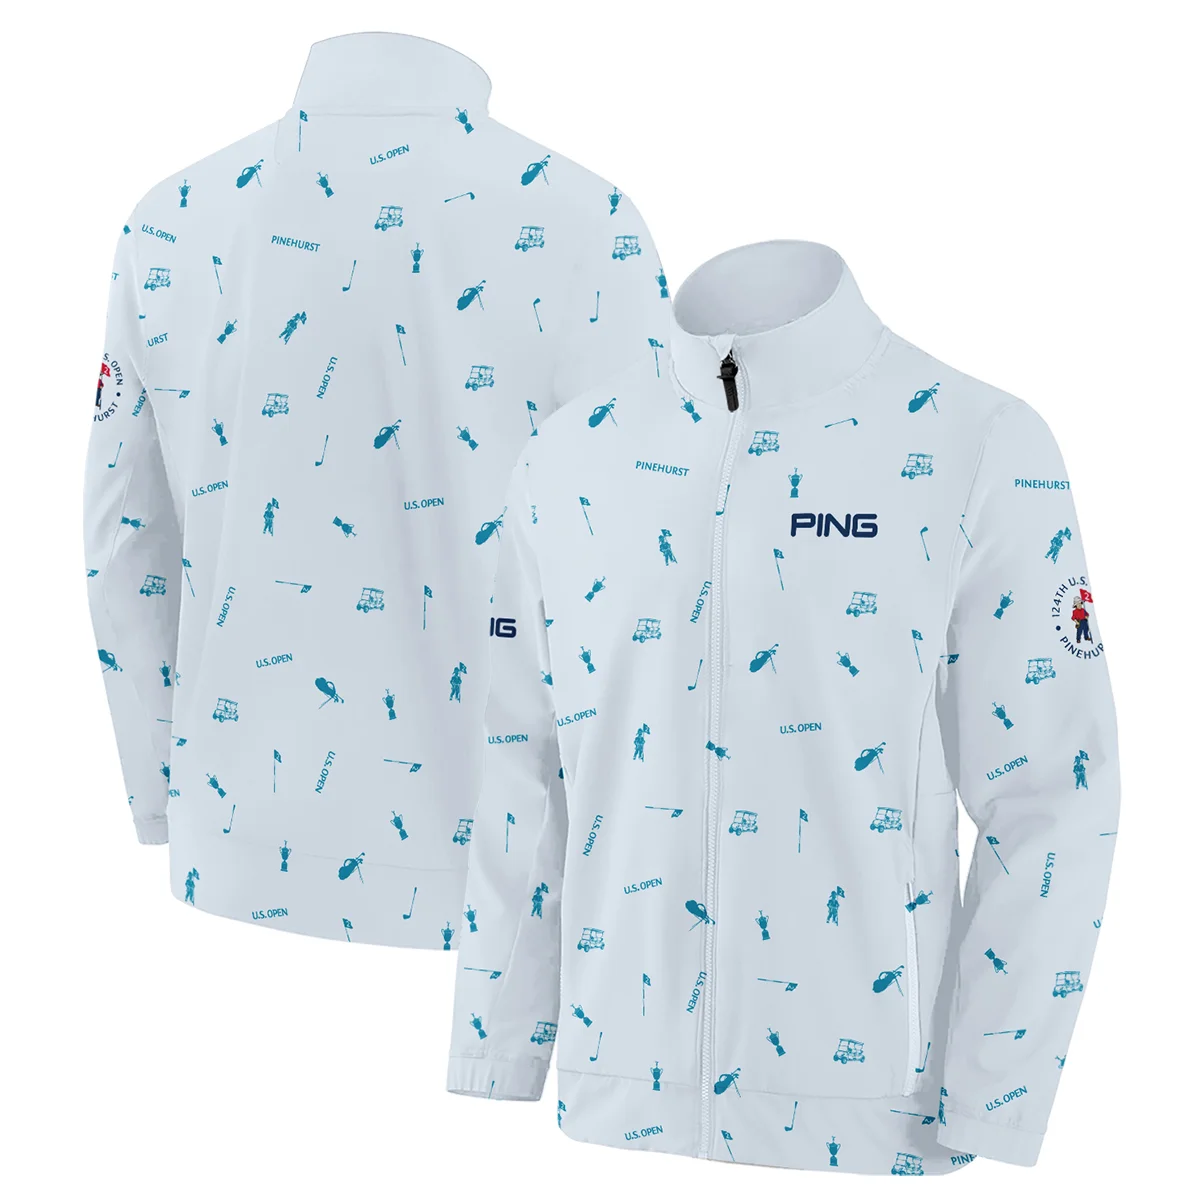 Ping 124th U.S. Open Pinehurst Zipper Hoodie Shirt Light Blue Pastel Golf Pattern All Over Print Zipper Hoodie Shirt